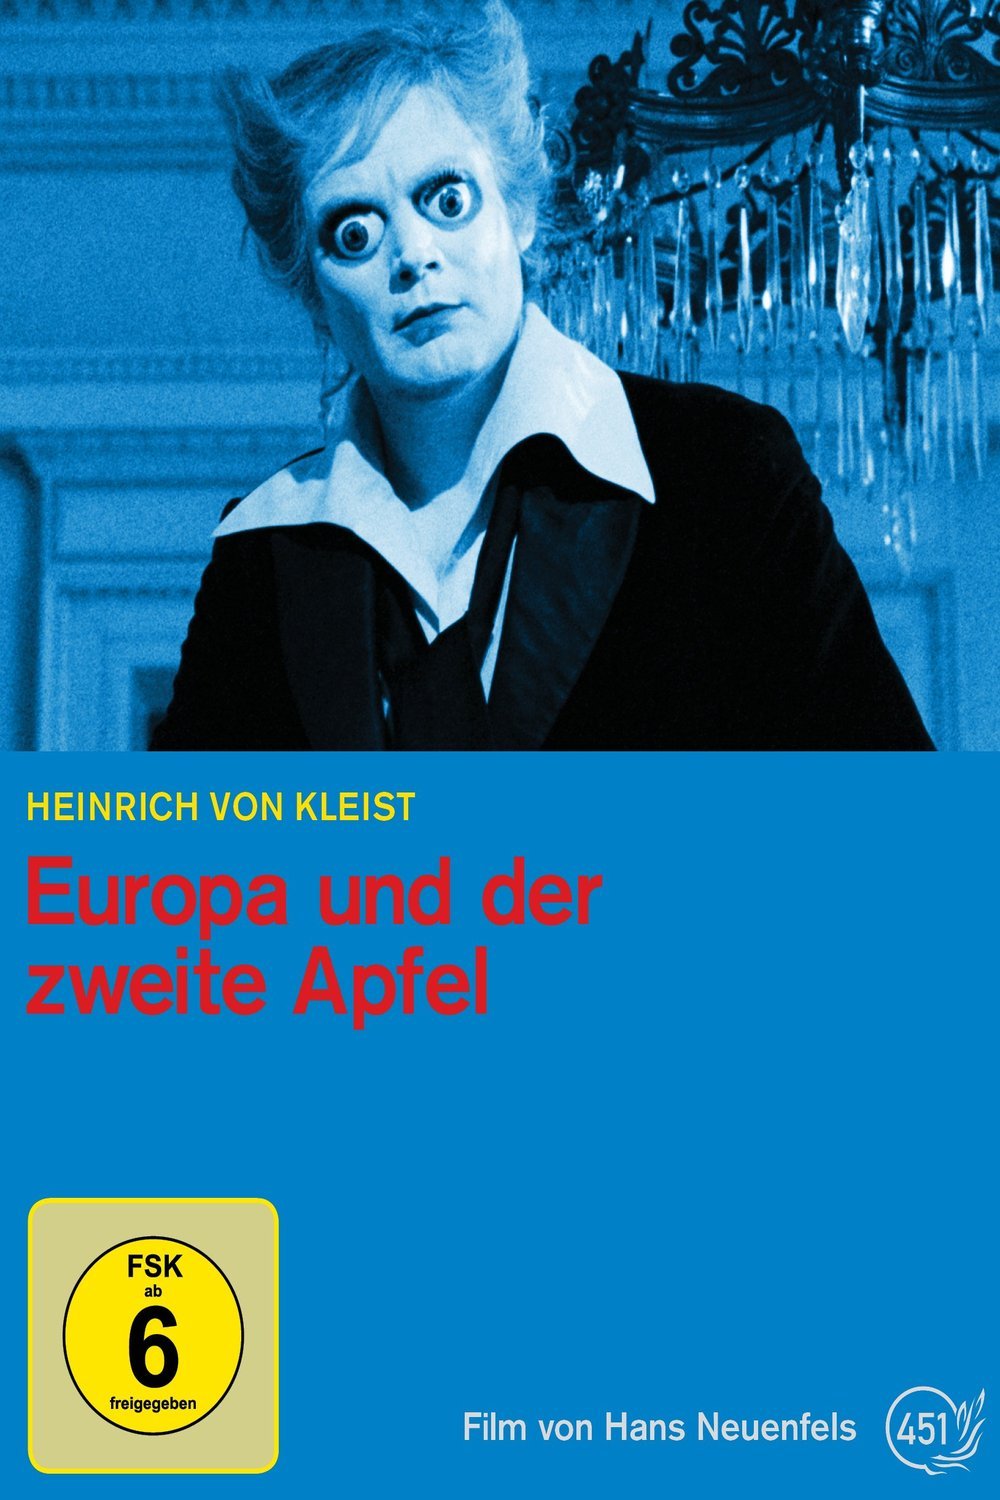 German poster of the movie Europa und der zweite Apfel